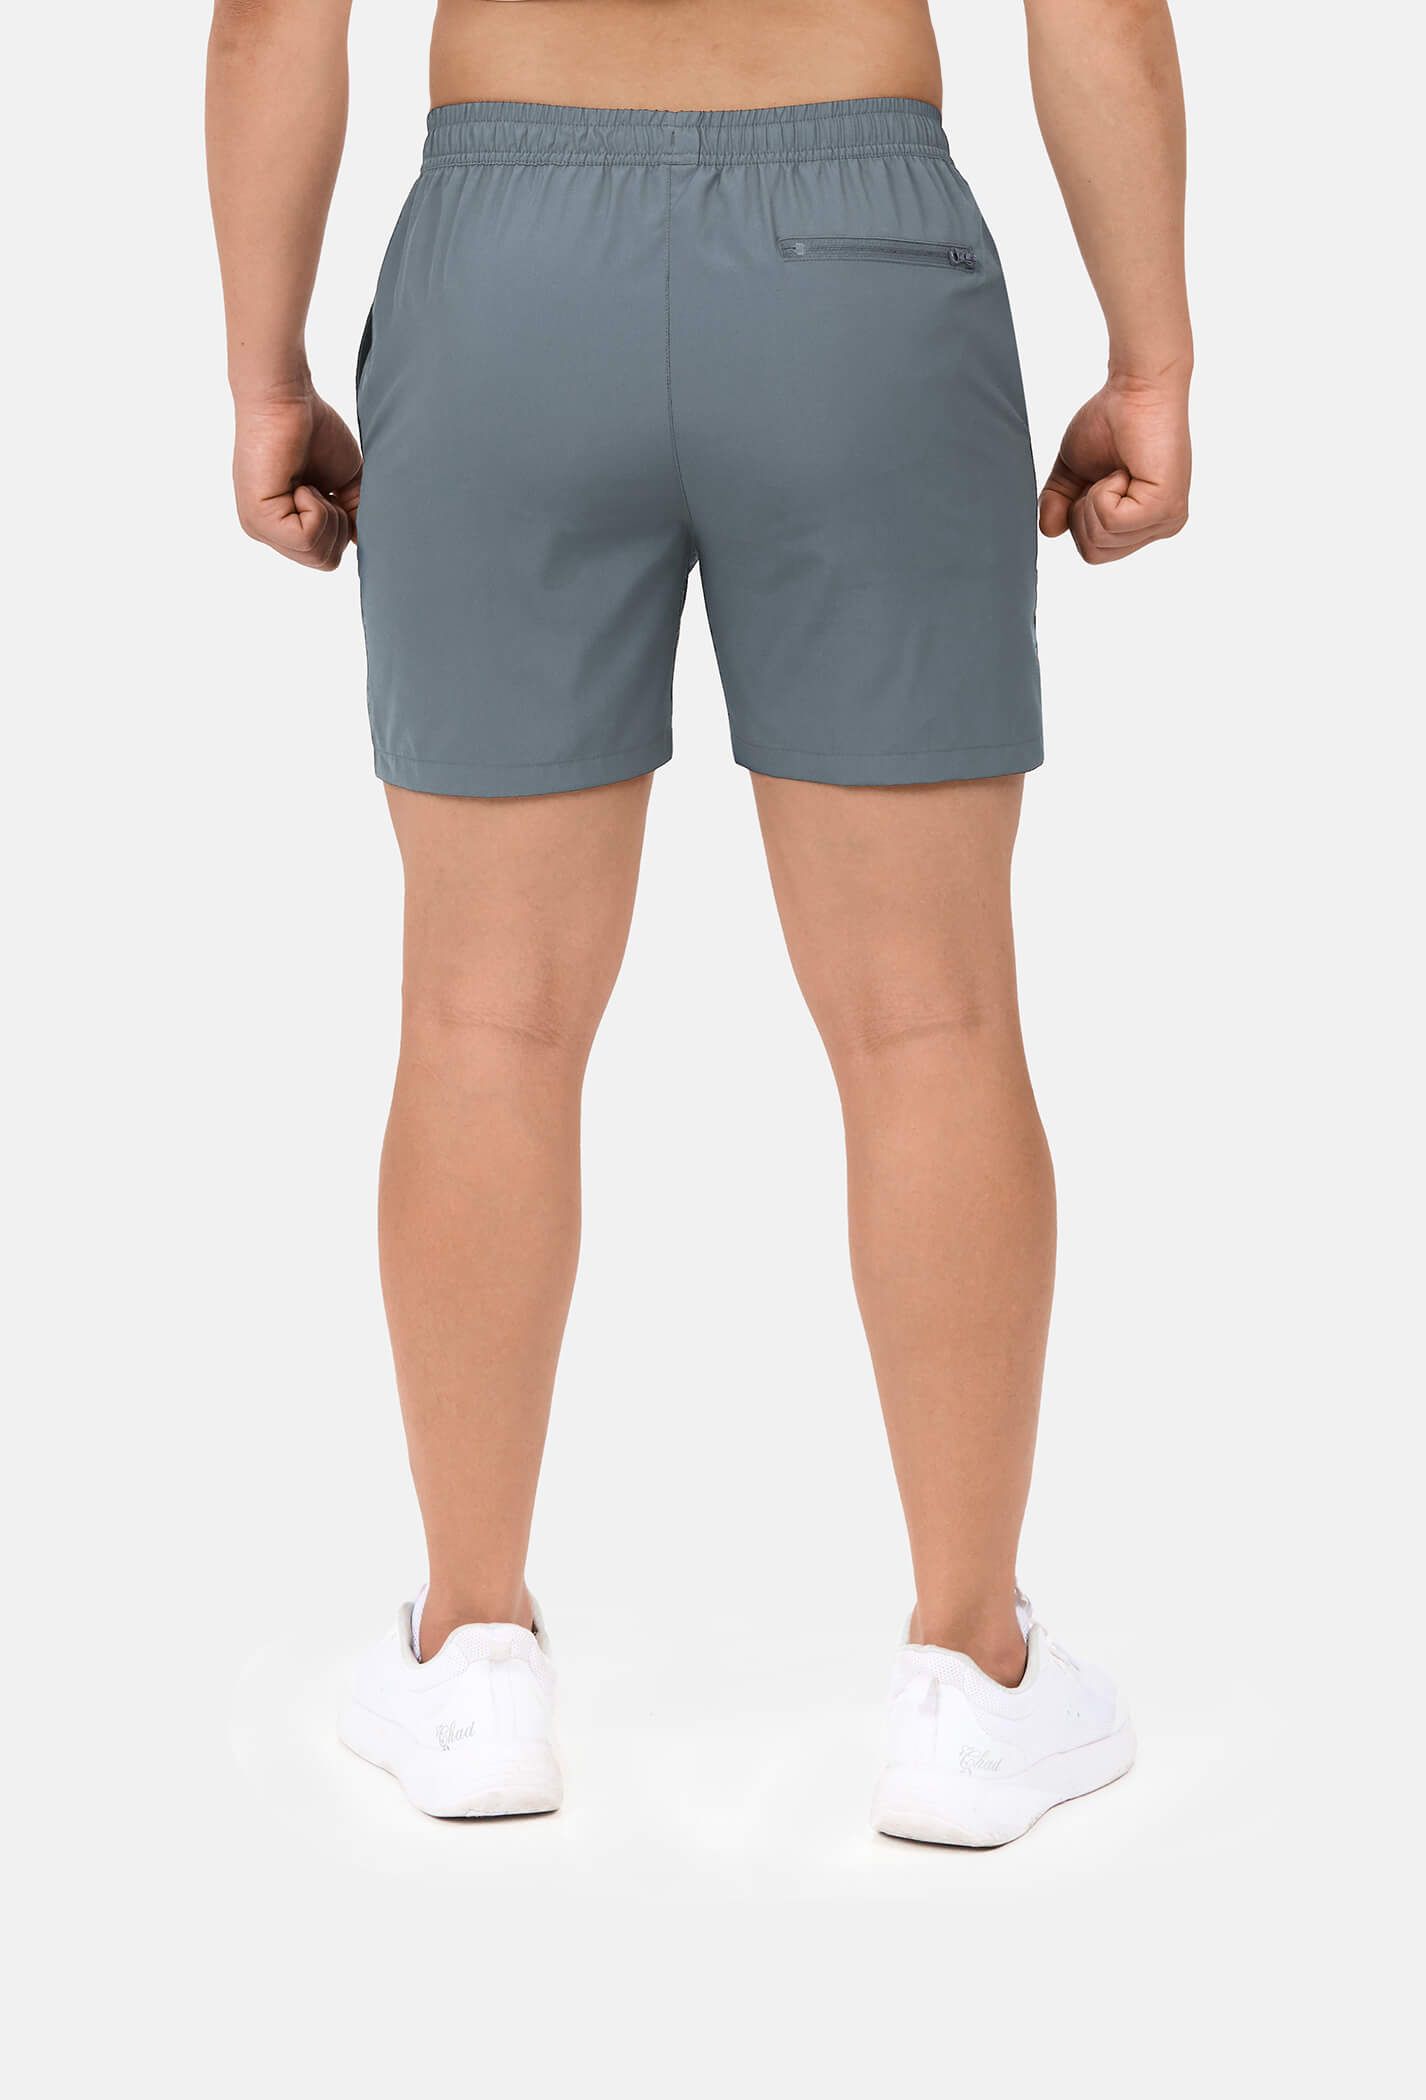 SĂN DEAL - Quần shorts nam thể thao 5" xẻ gấu cao (túi sau có khóa kéo) Xám xanh 3